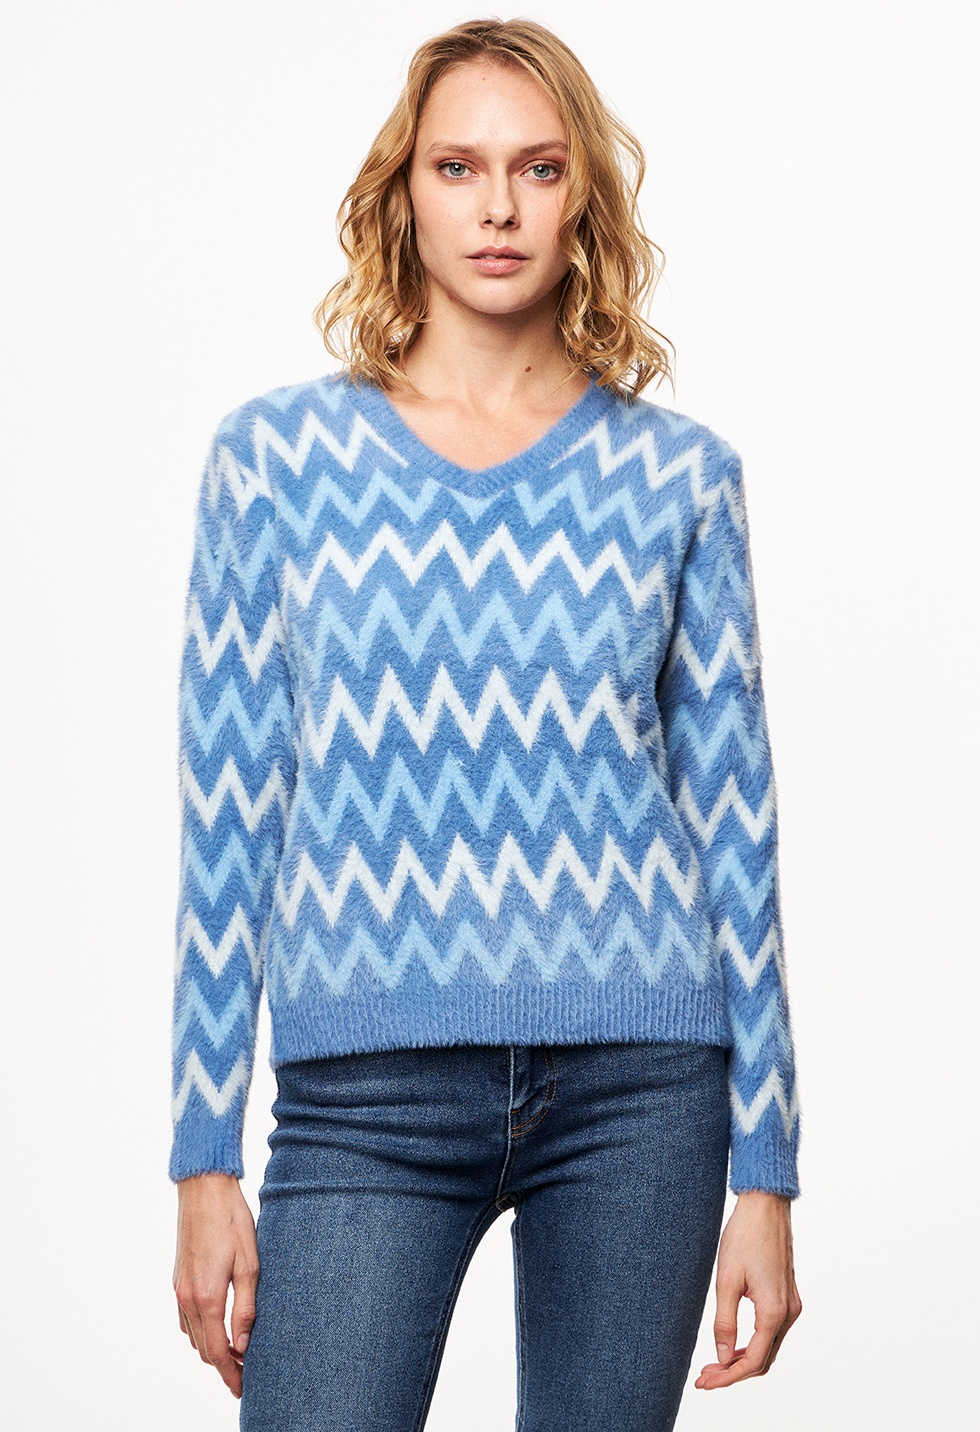 Soft jacquard knit sweater